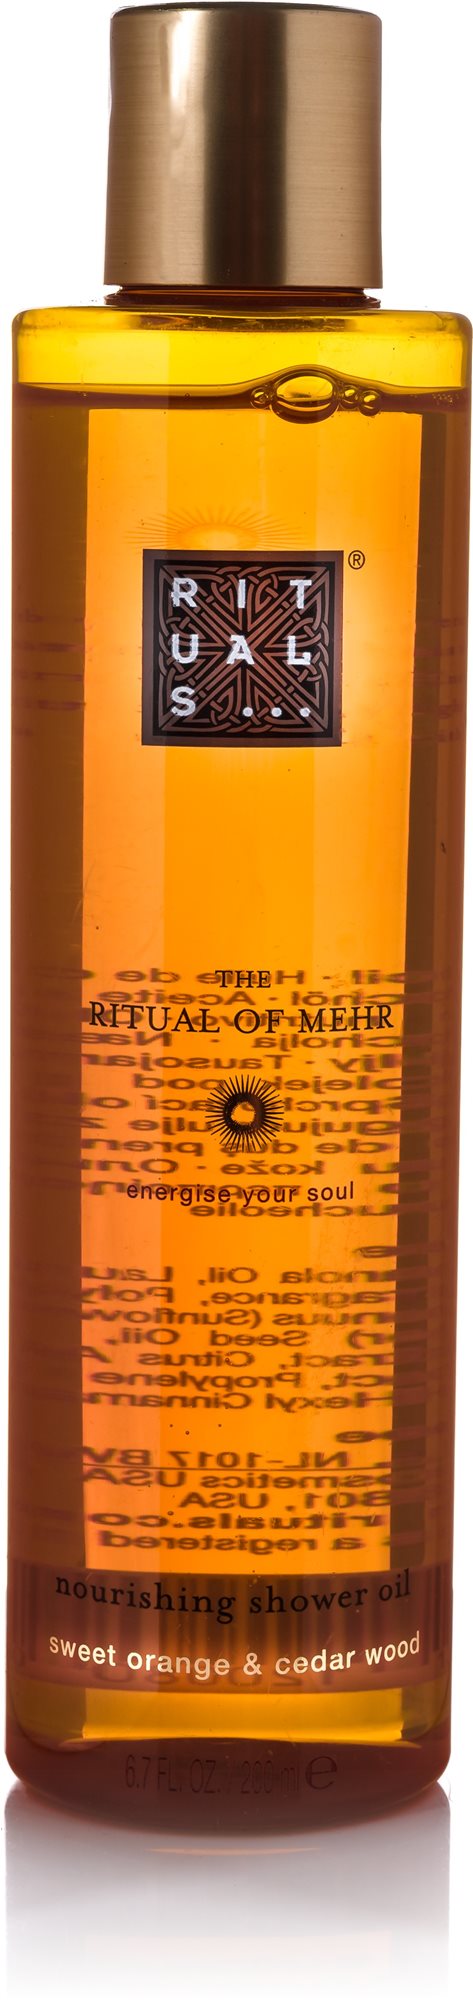 RITUALS The Ritual of Mehr Nourishing Shower Oil 200 ml